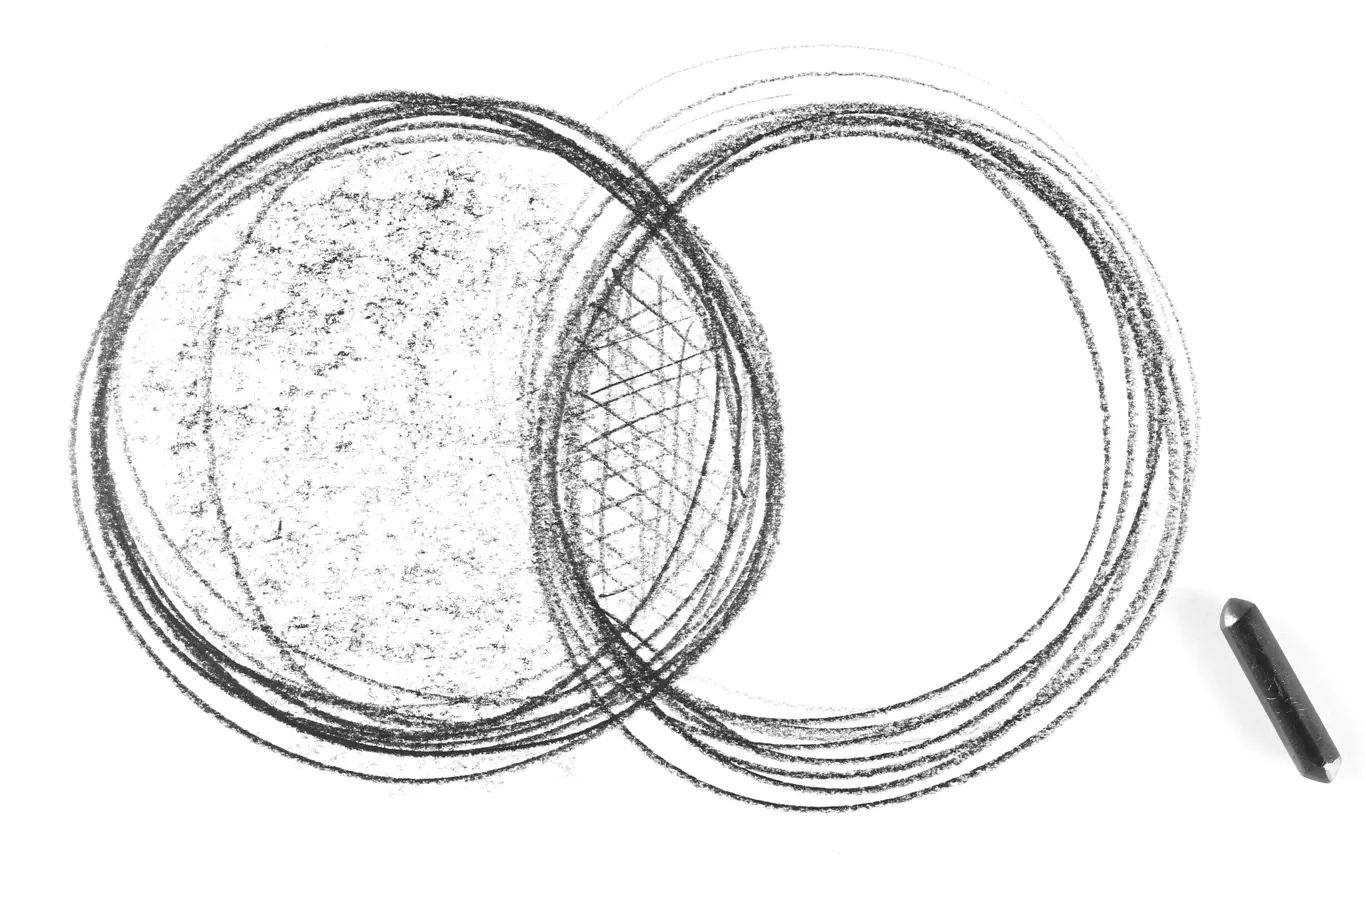 Optická iluze dvou kroužků